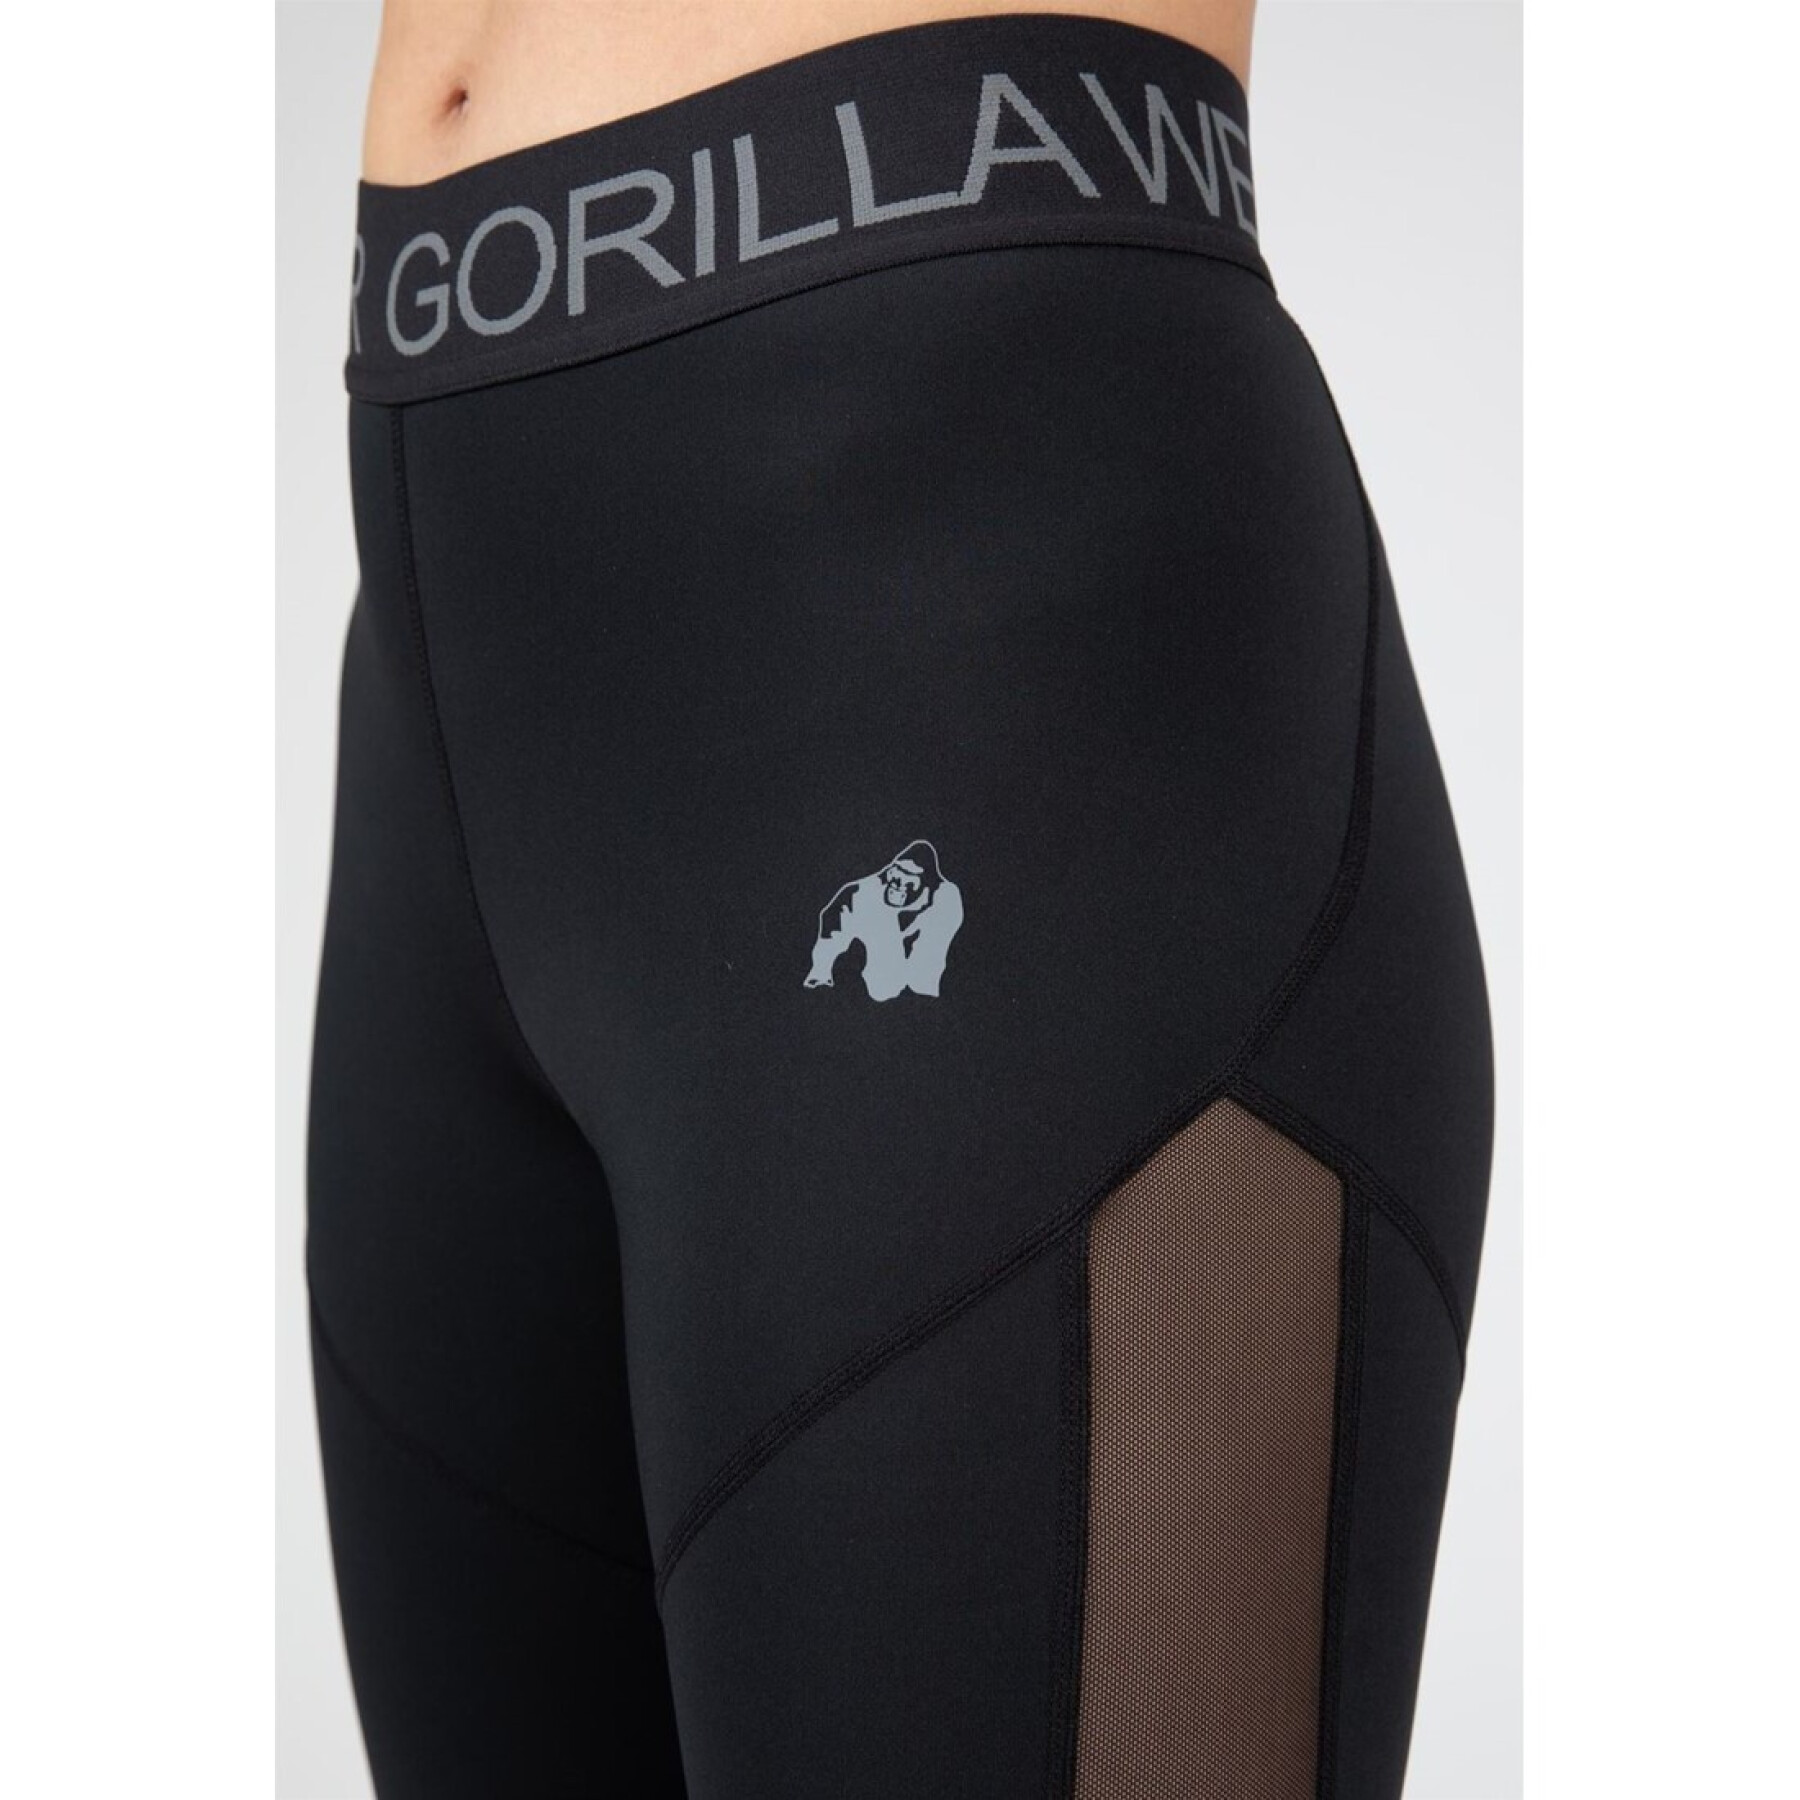 Women's leggings Gorilla Wear Osseo